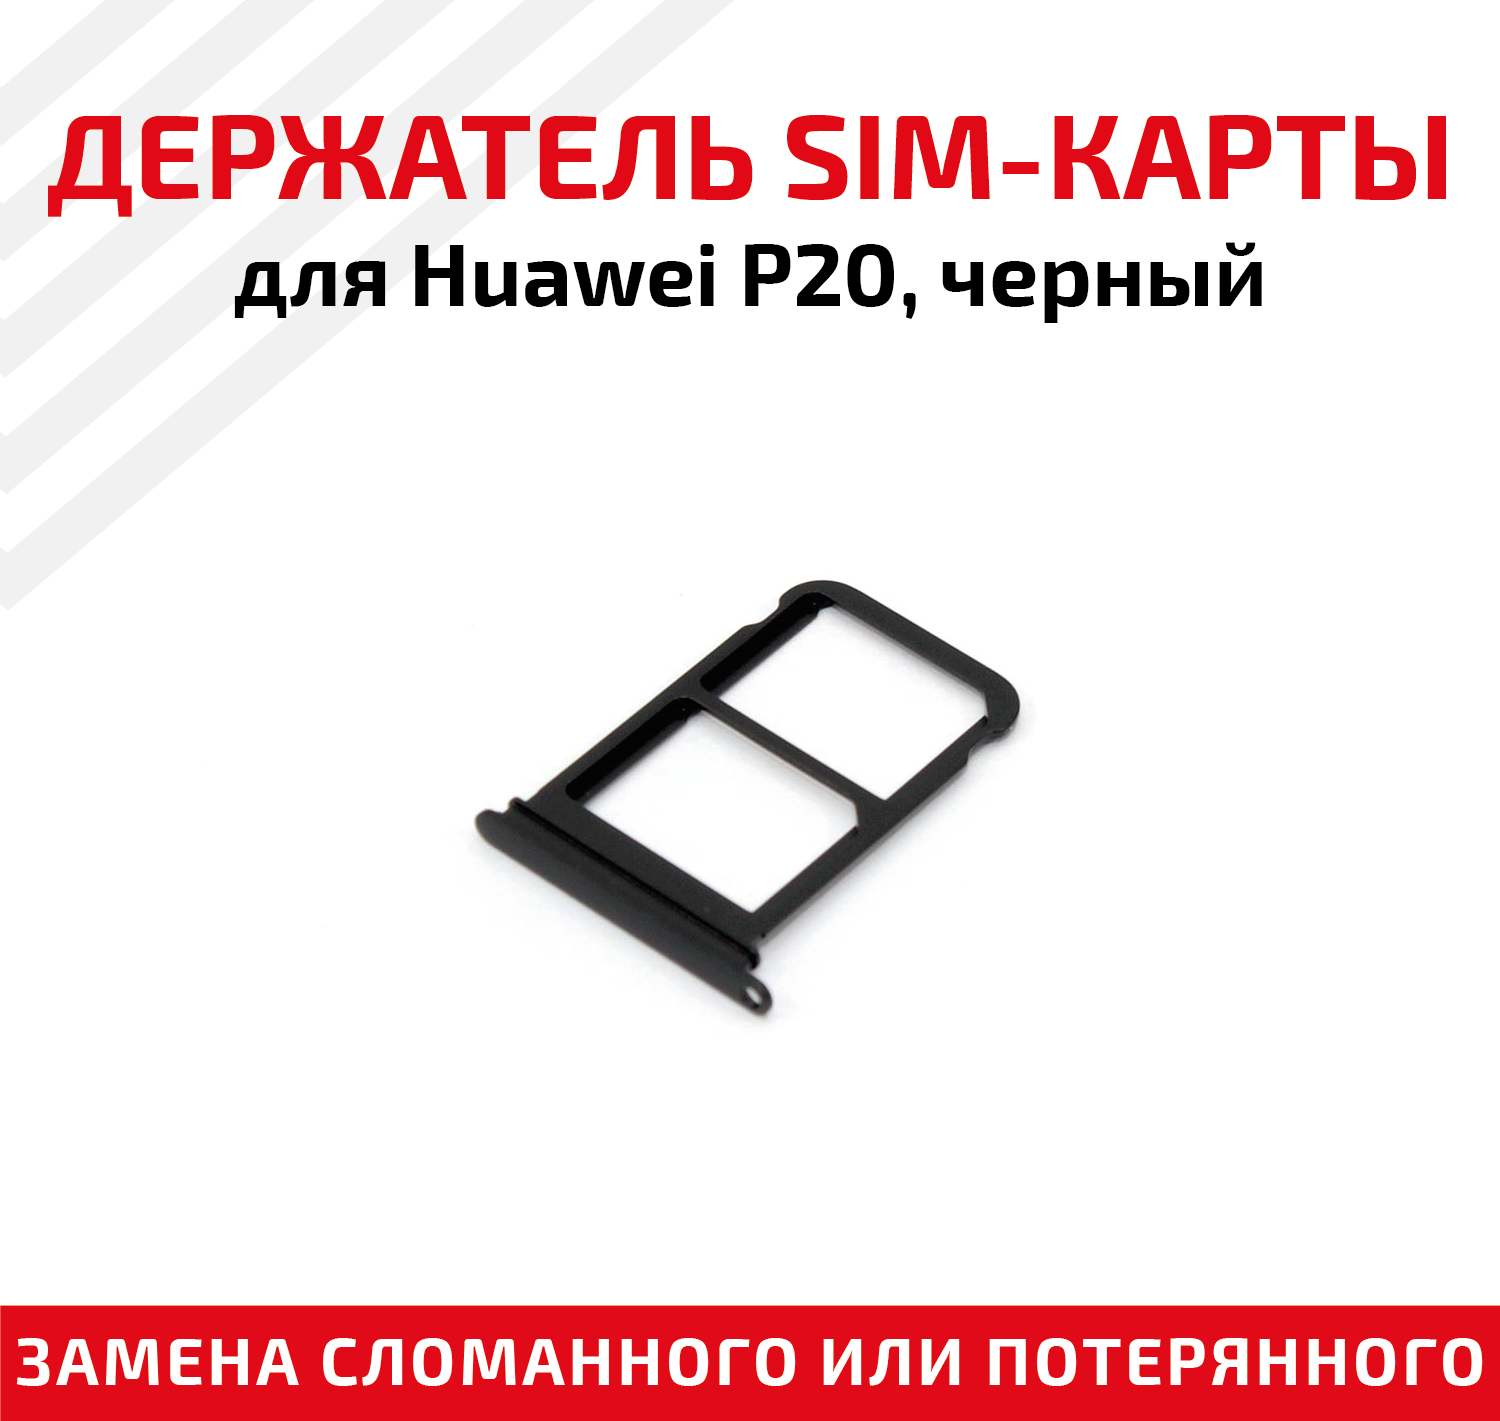 Лоток (держатель, контейнер, слот) SIM-карты для мобильного телефона (смартфона) Huawei P20, черный